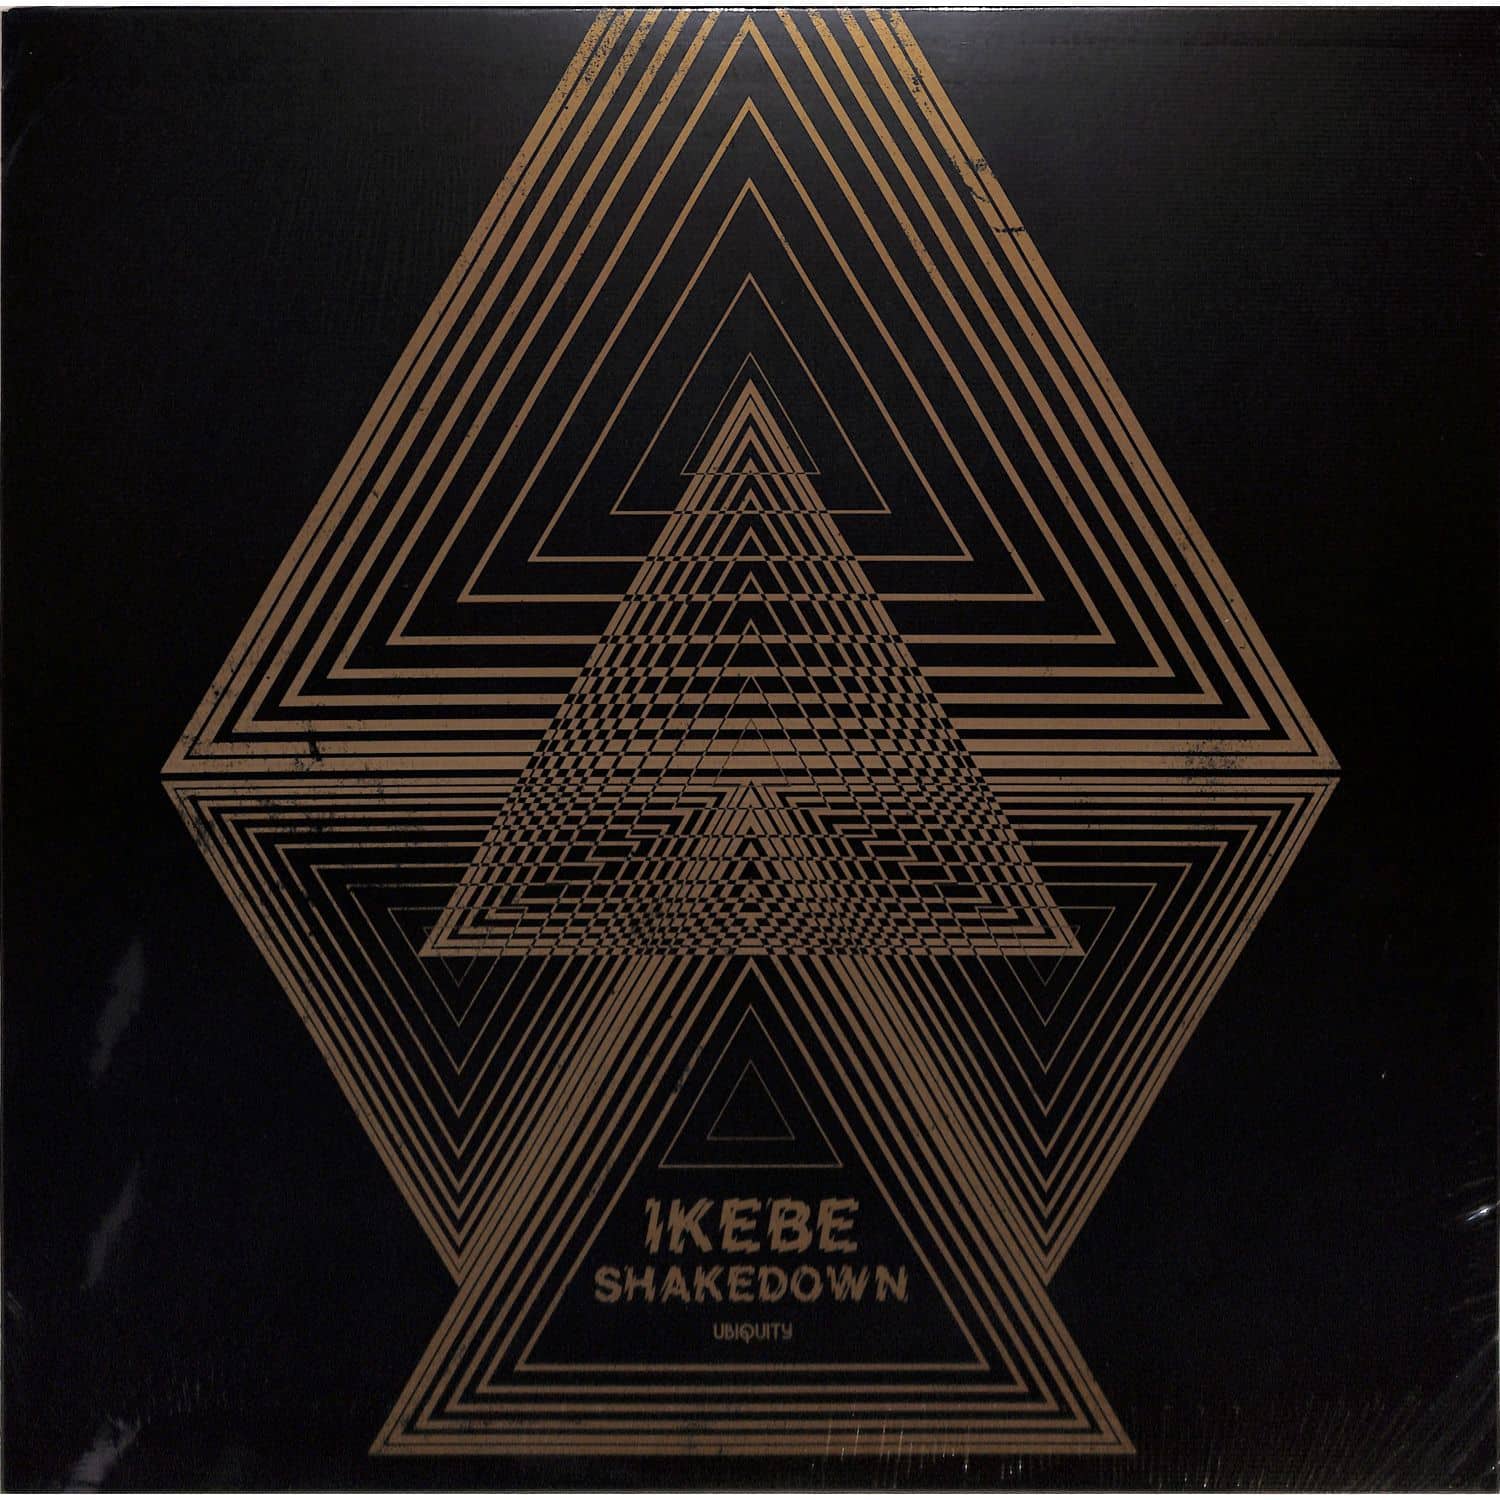 Ikebe Shakedown - IKEBE SHAKEDOWN 